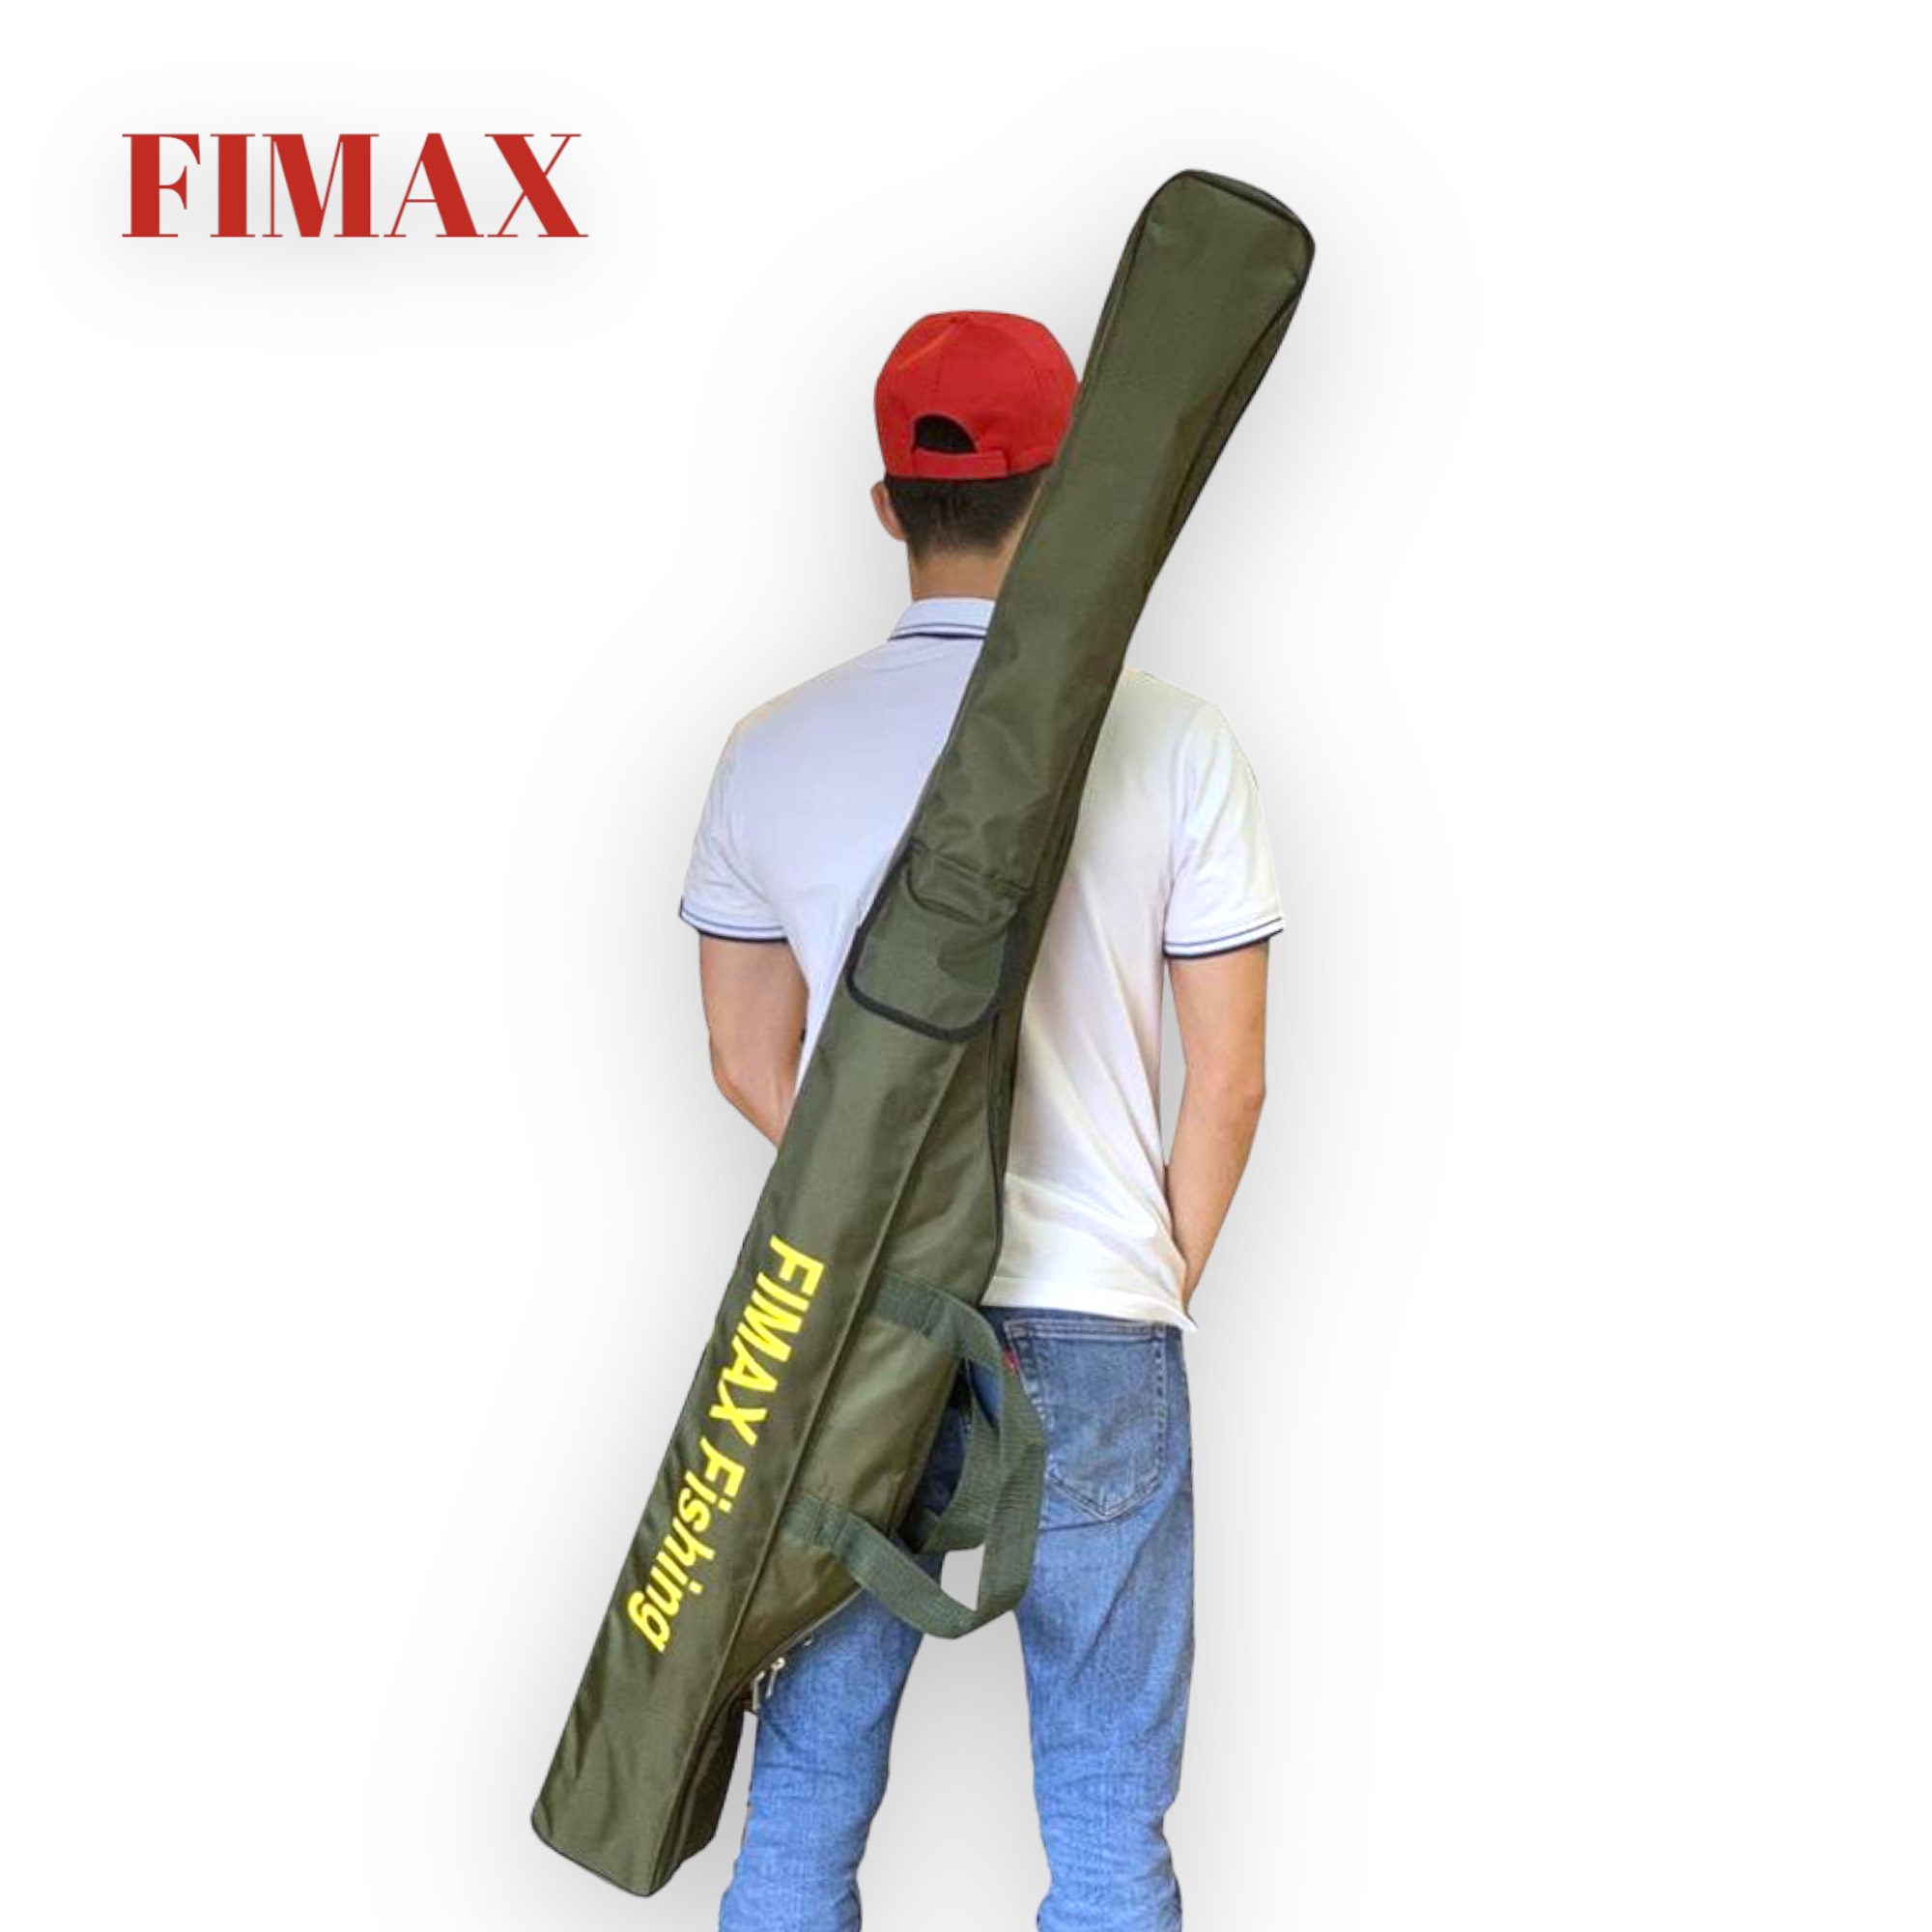 [HOT] Túi đựng cần câu Fimax Fishing 3 ngăn cao cấp siêu rộng đựng 4 đến 5 bộ cần máy, Bao đựng cần 2 khúc siêu bền dài 125cm, 145cm, 165cm